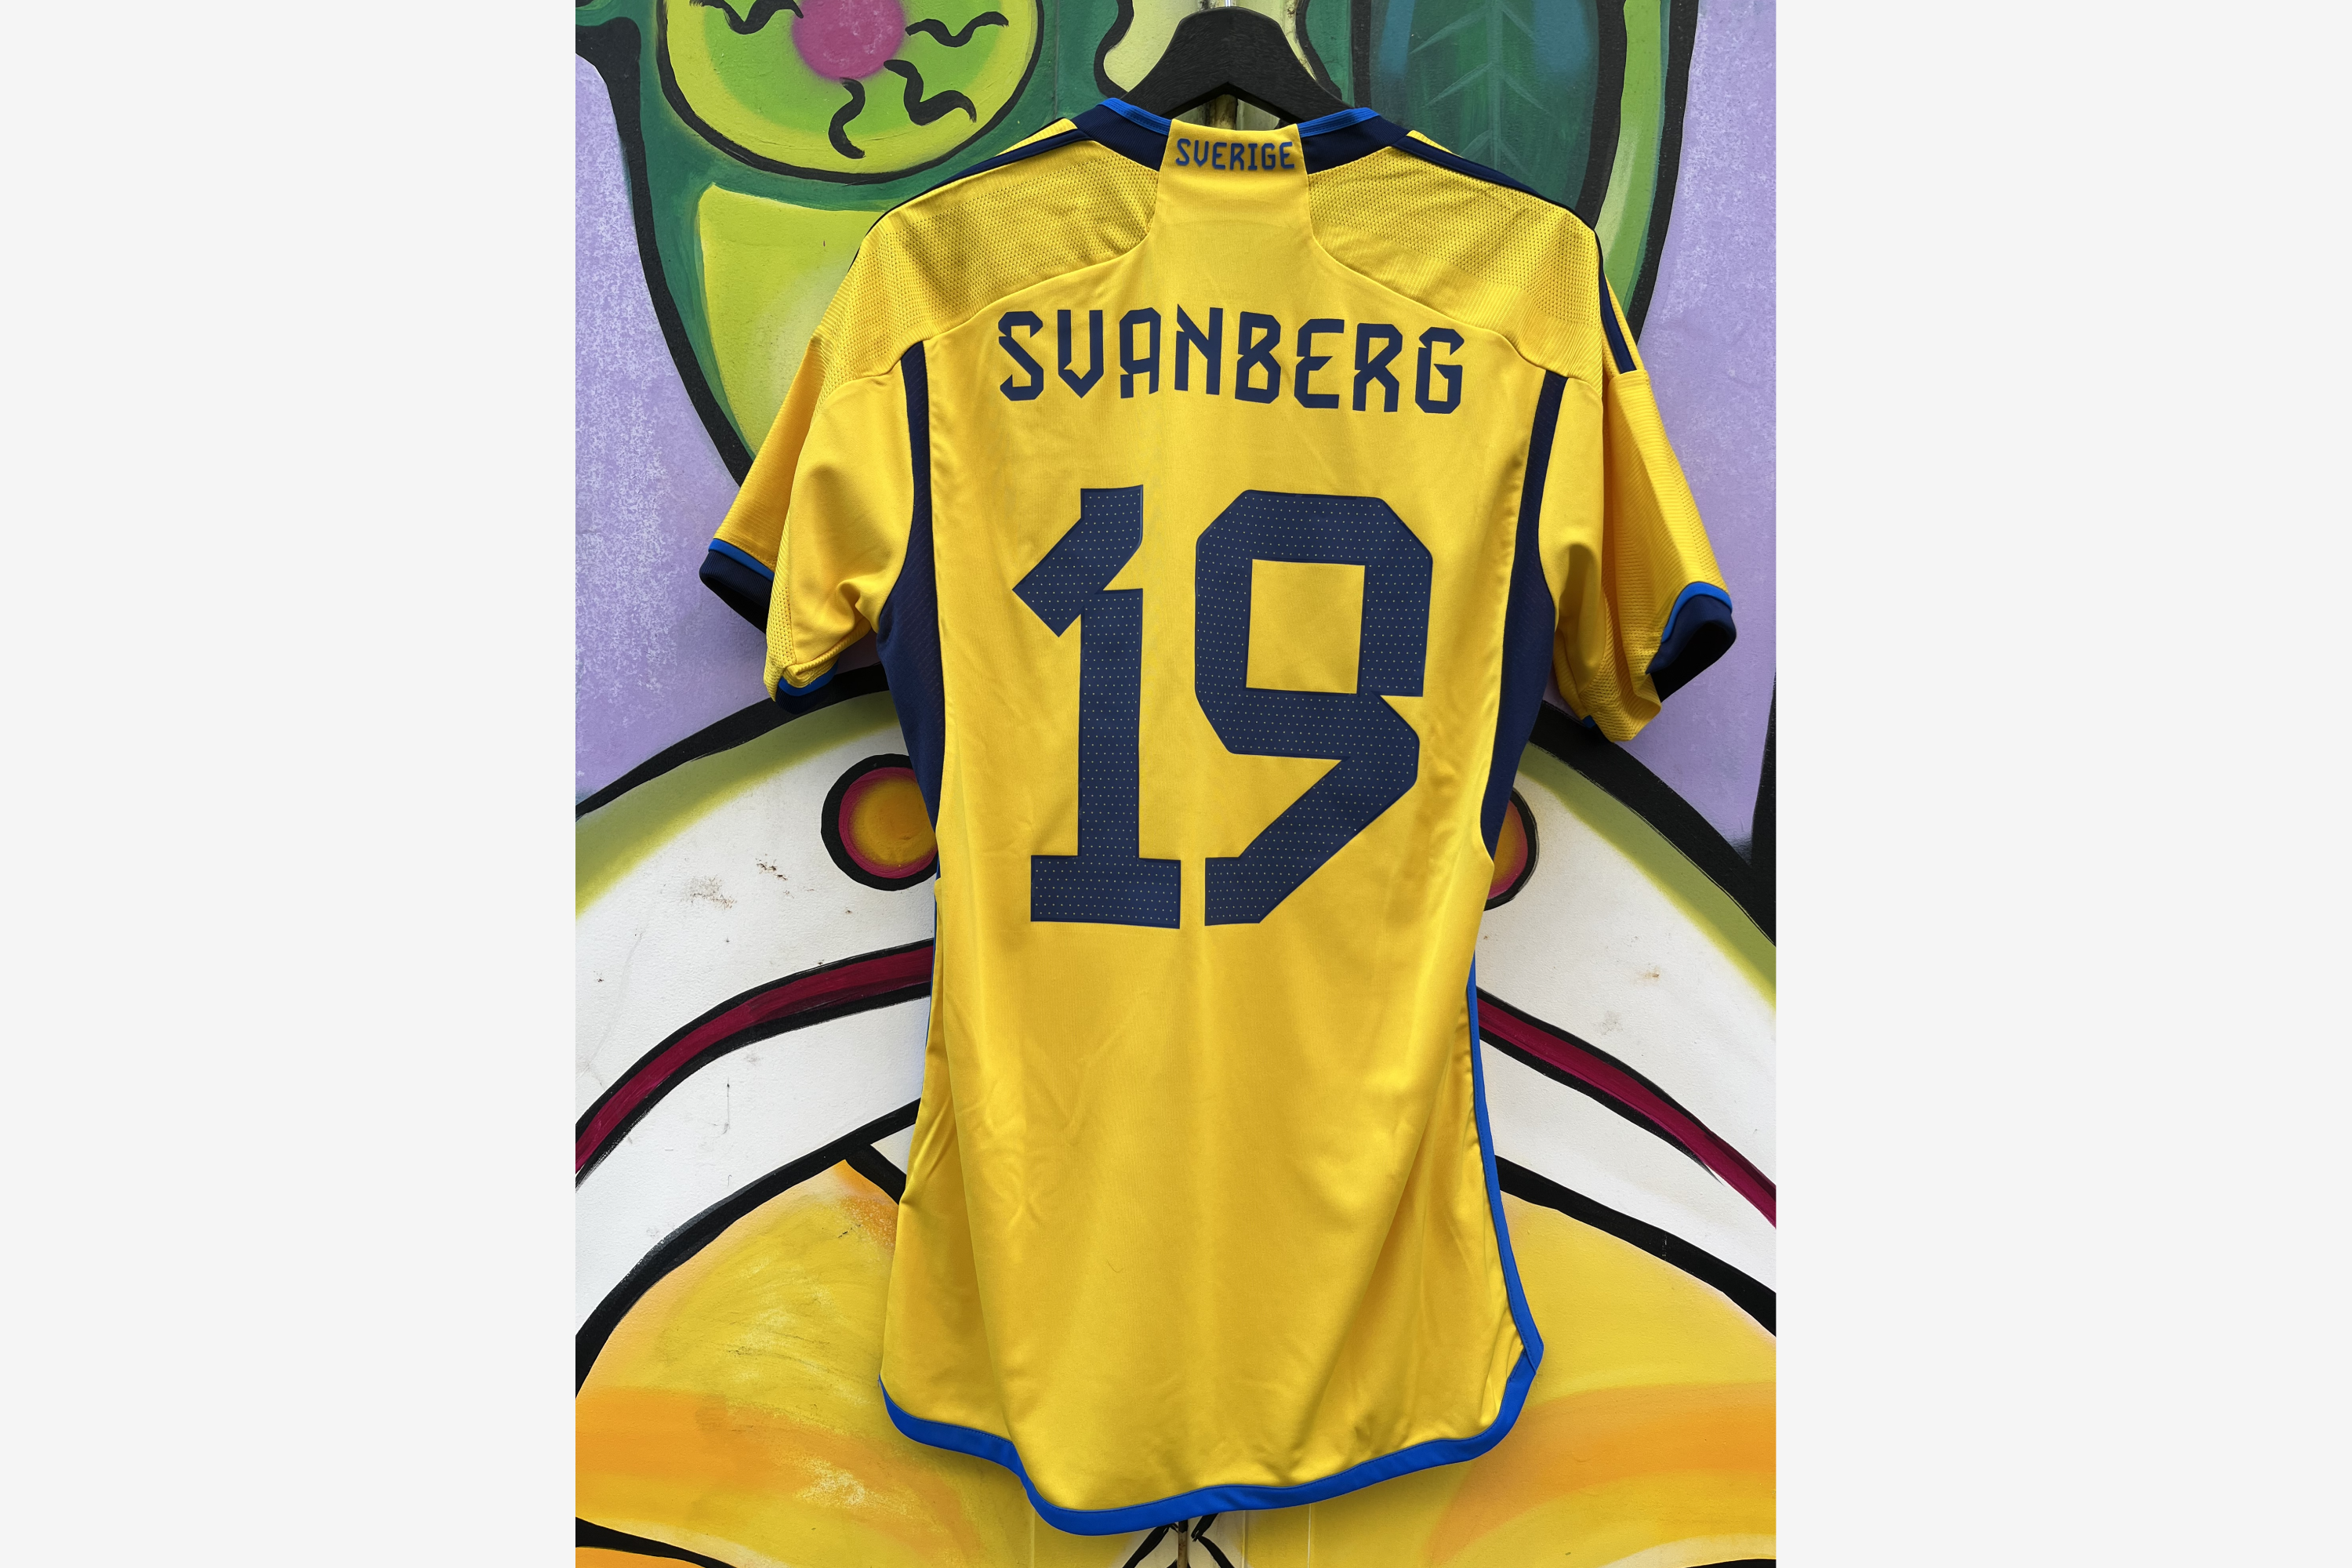 Adidas - Sweden 2022/23 Home Football Shirt Mexico - Sweden 'SVANBERG' (Match Worn)